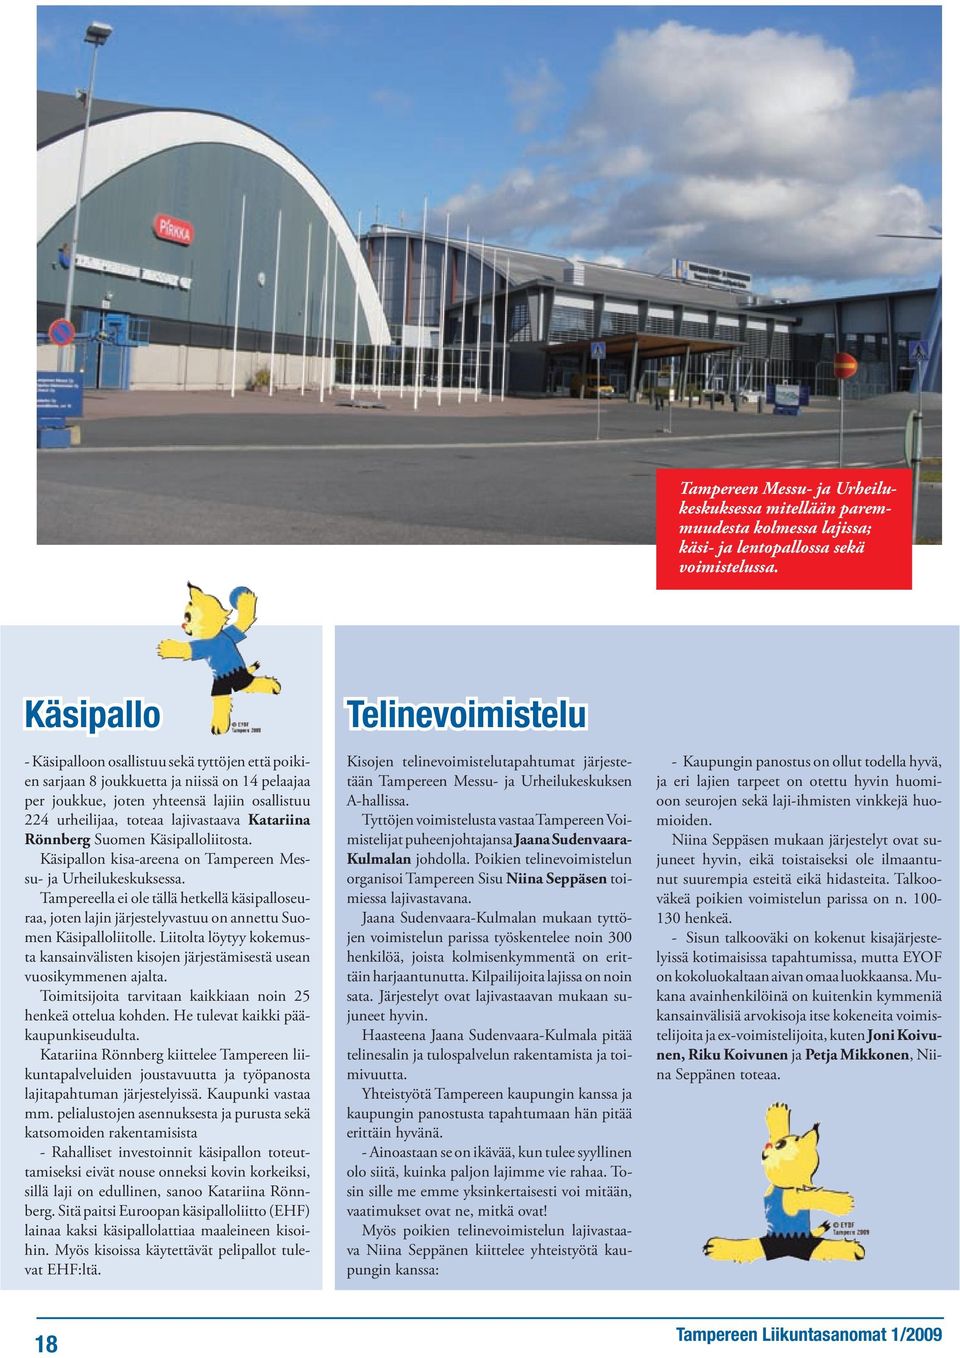 Rönnberg Suomen Käsipalloliitosta. Käsipallon kisa-areena on Tampereen Messu- ja Urheilukeskuksessa.